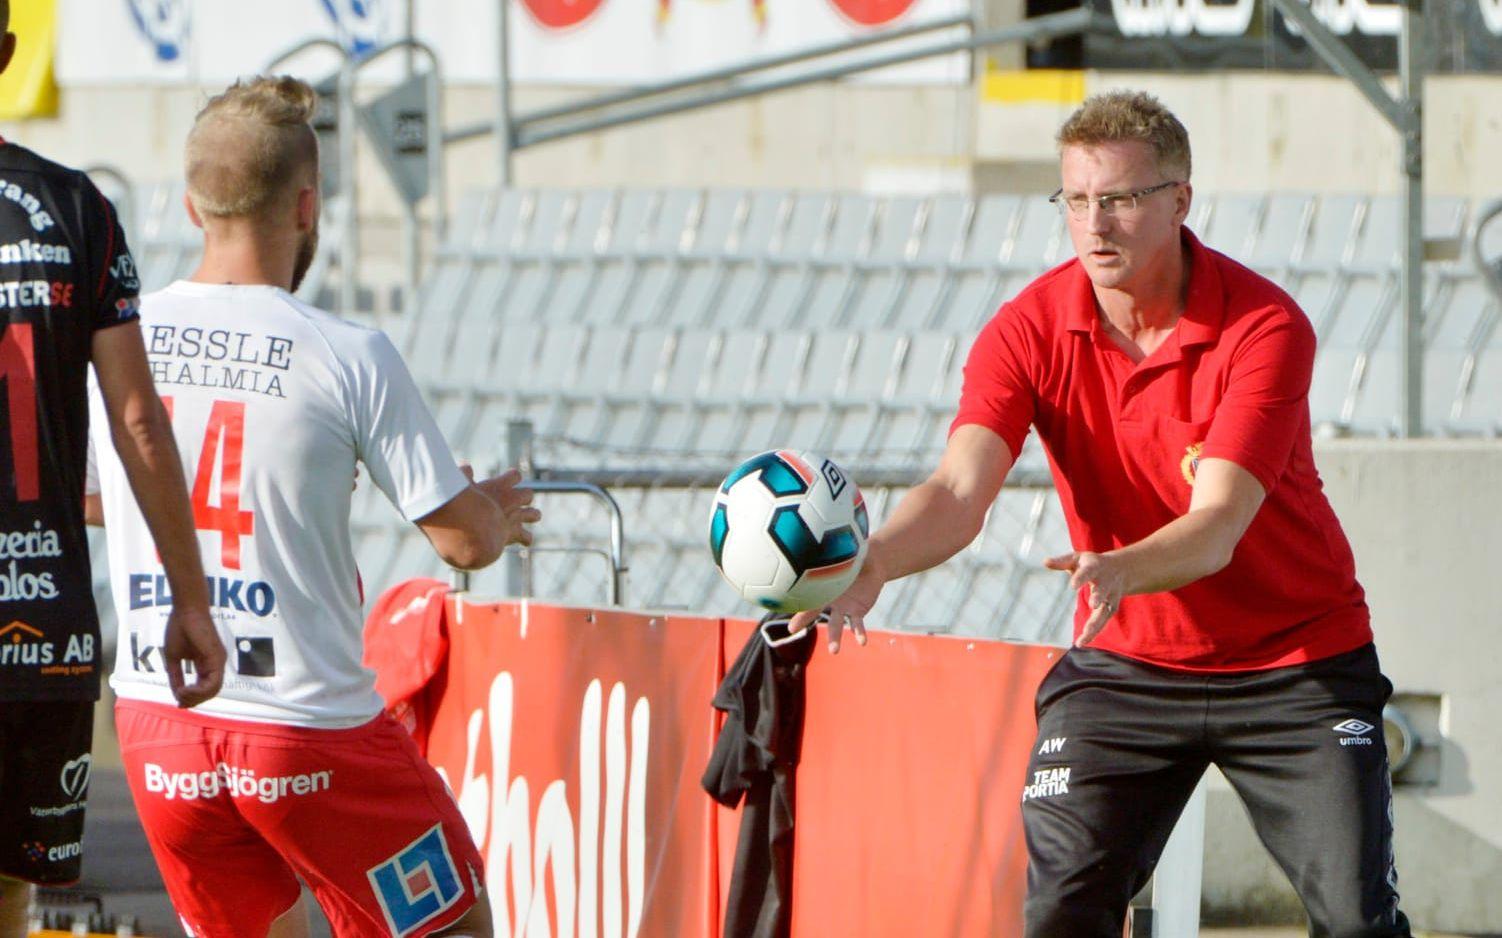 Inte orolig. Halmias nye tränare Anders Wallin såg poängförlusten mot jumbon som ett kliv framåt. Bild: Jari Välitalo